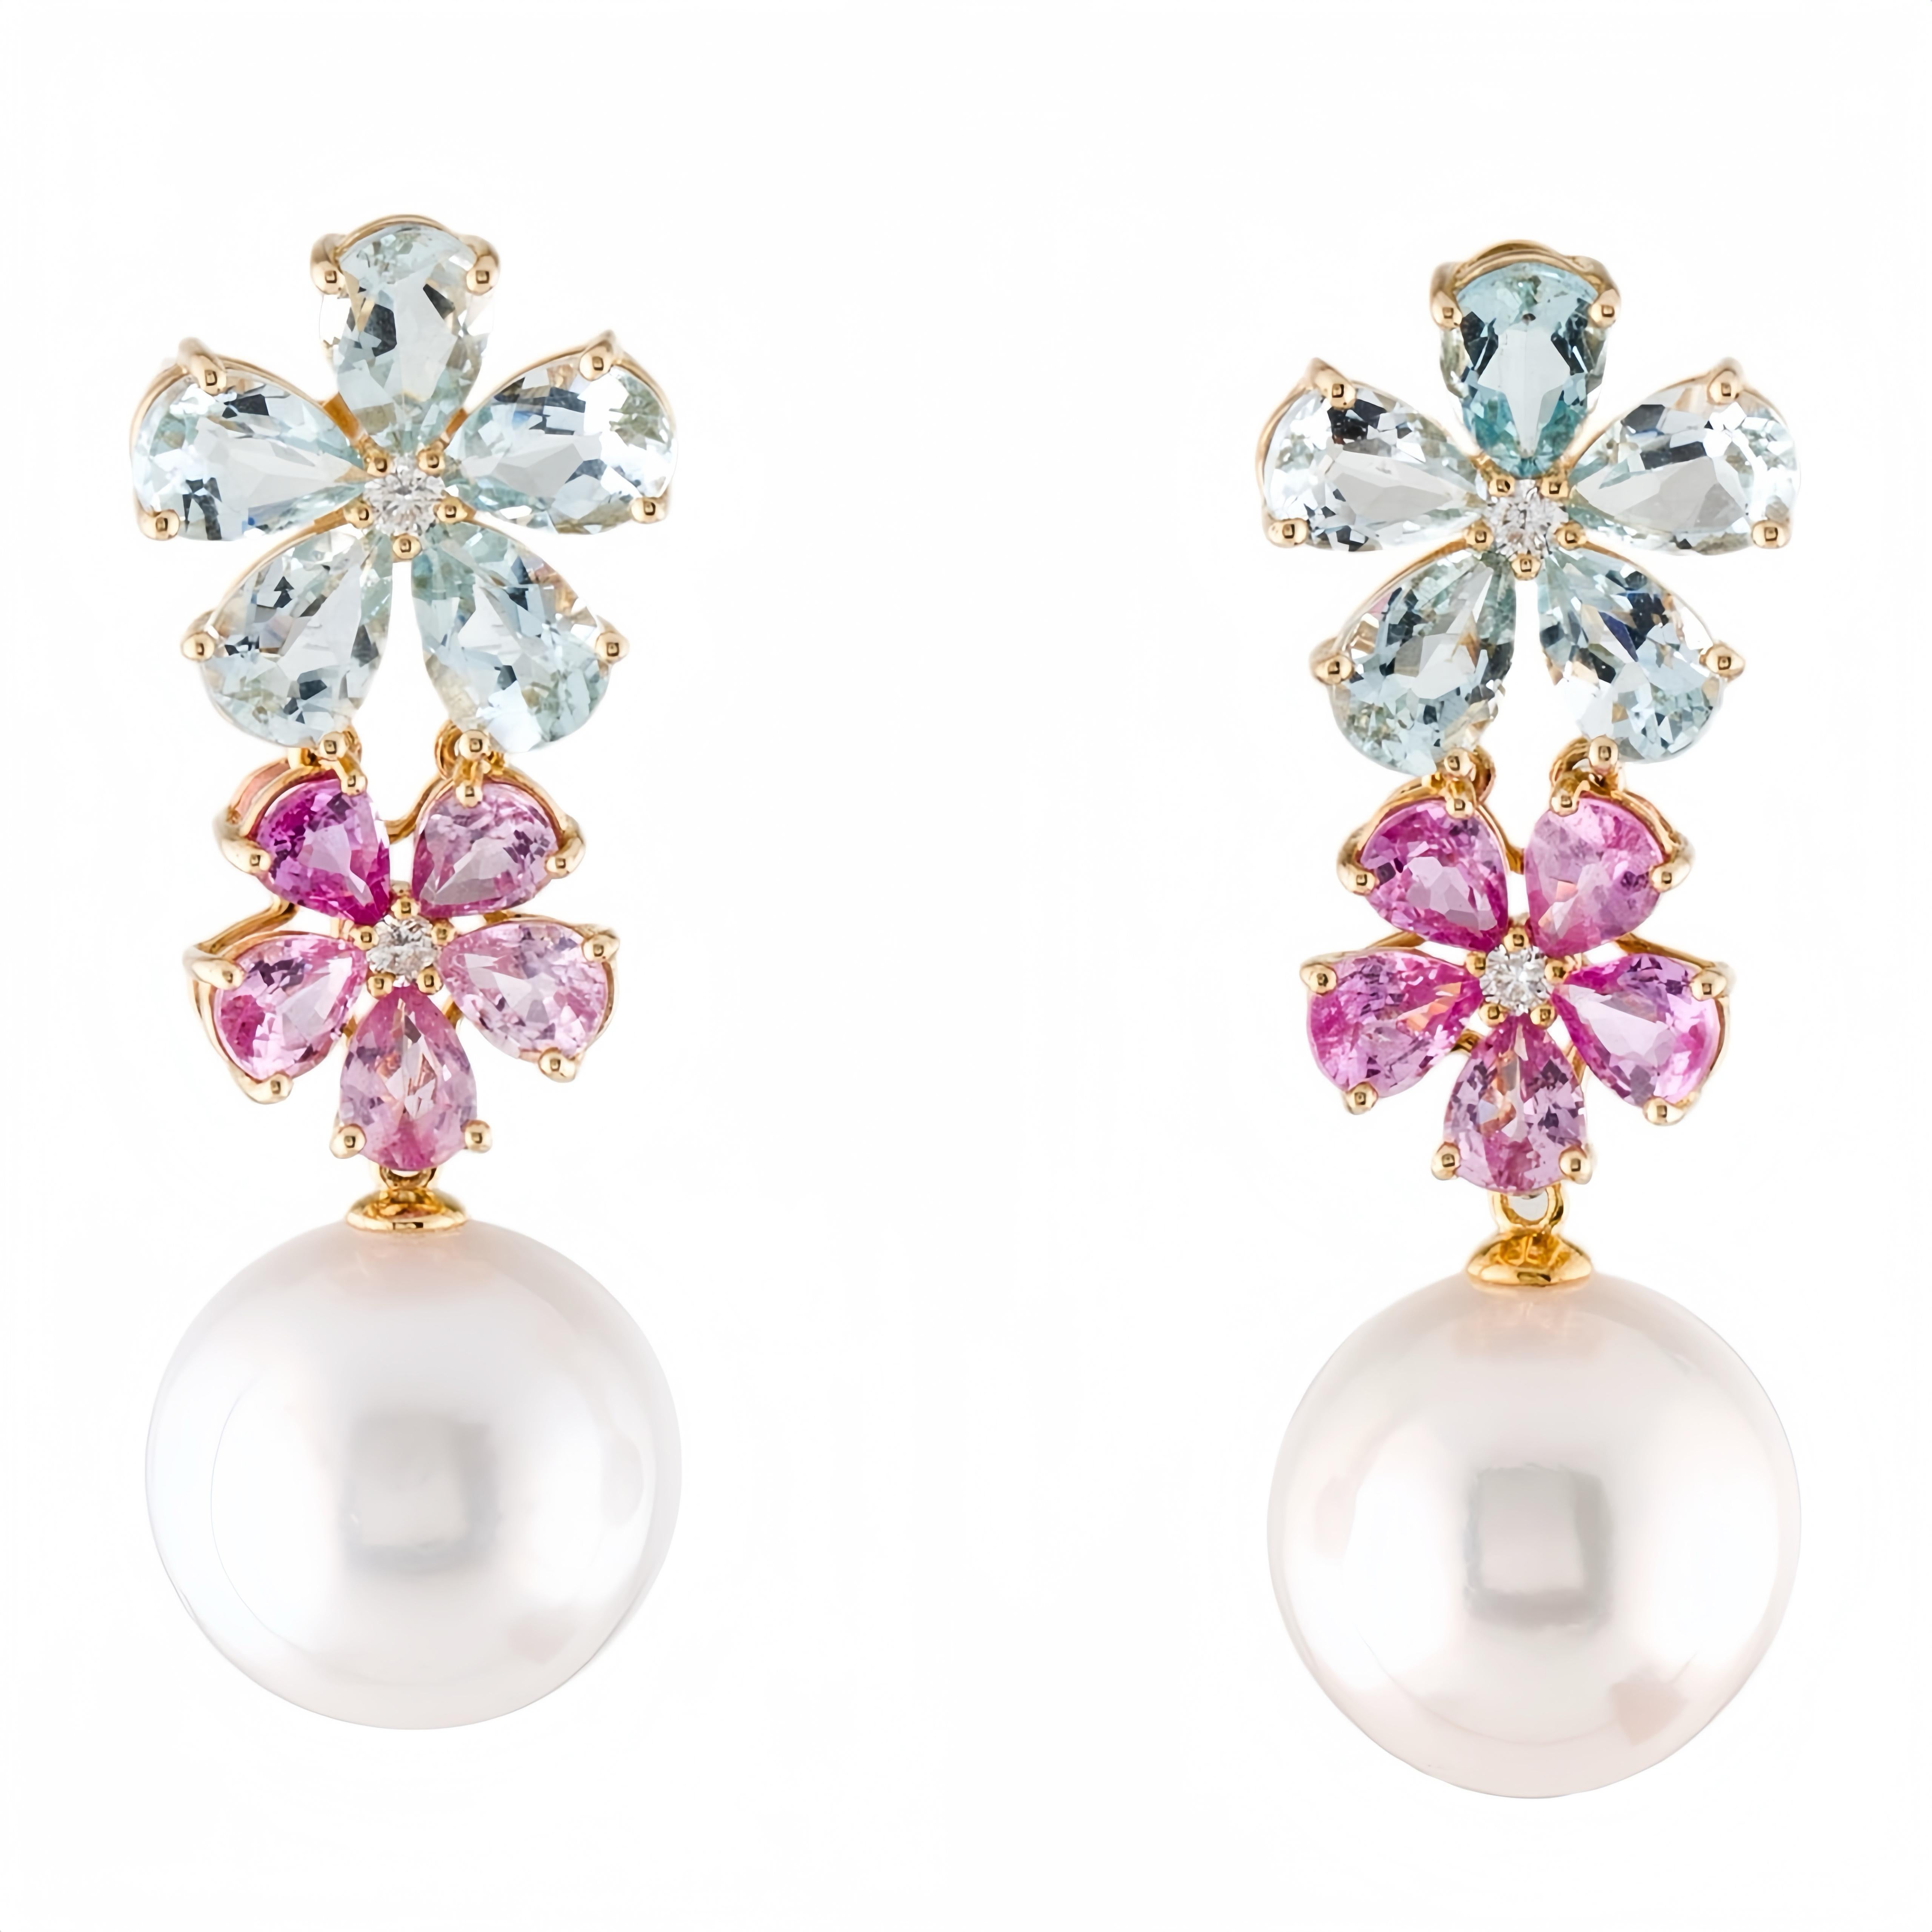 Entdecken Sie die Nina Zhou Aquamarin-Rosa-Saphir-Diamant-Blüte 12-13mm Perlen-Convertible-Tropfenohrringe aus 18k Gelbgold, die für zeitlose Eleganz und aufwändige Handwerkskunst stehen. Diese exquisiten Ohrringe bestehen aus einer Reihe von 12-13